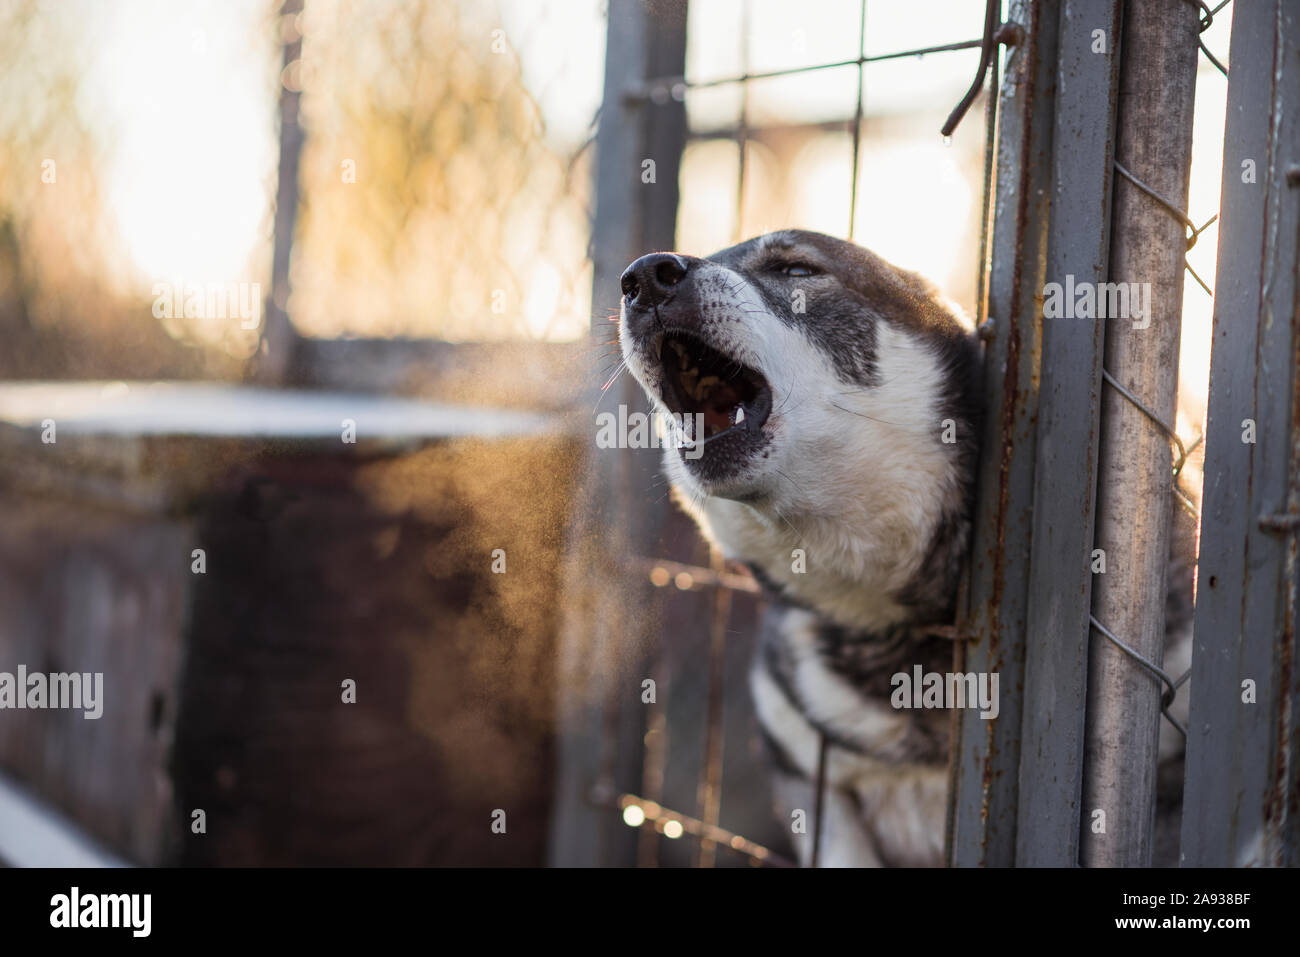 Dog barking Stock Photo